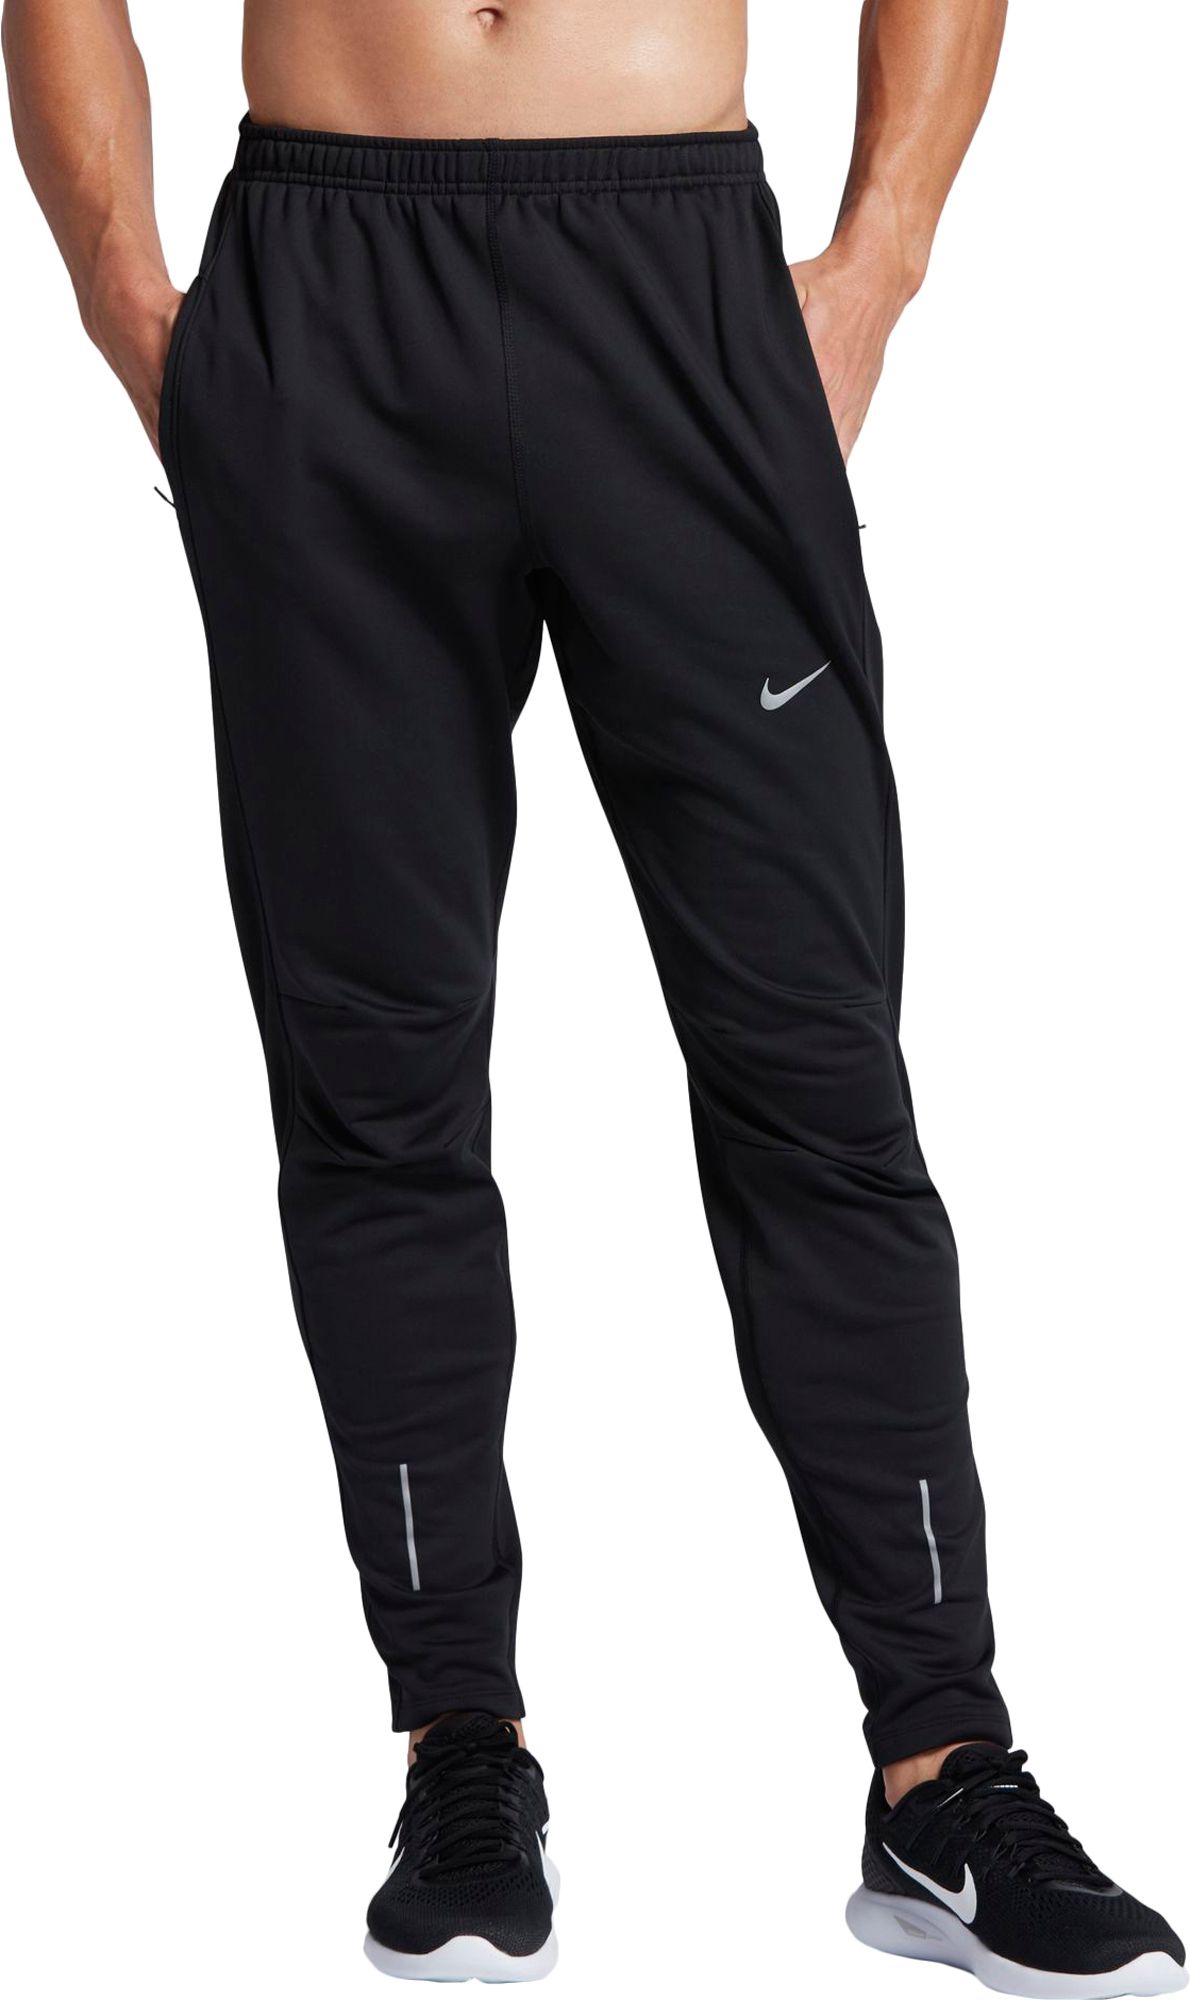 Nike Nylon Running Pants For Men The River City News